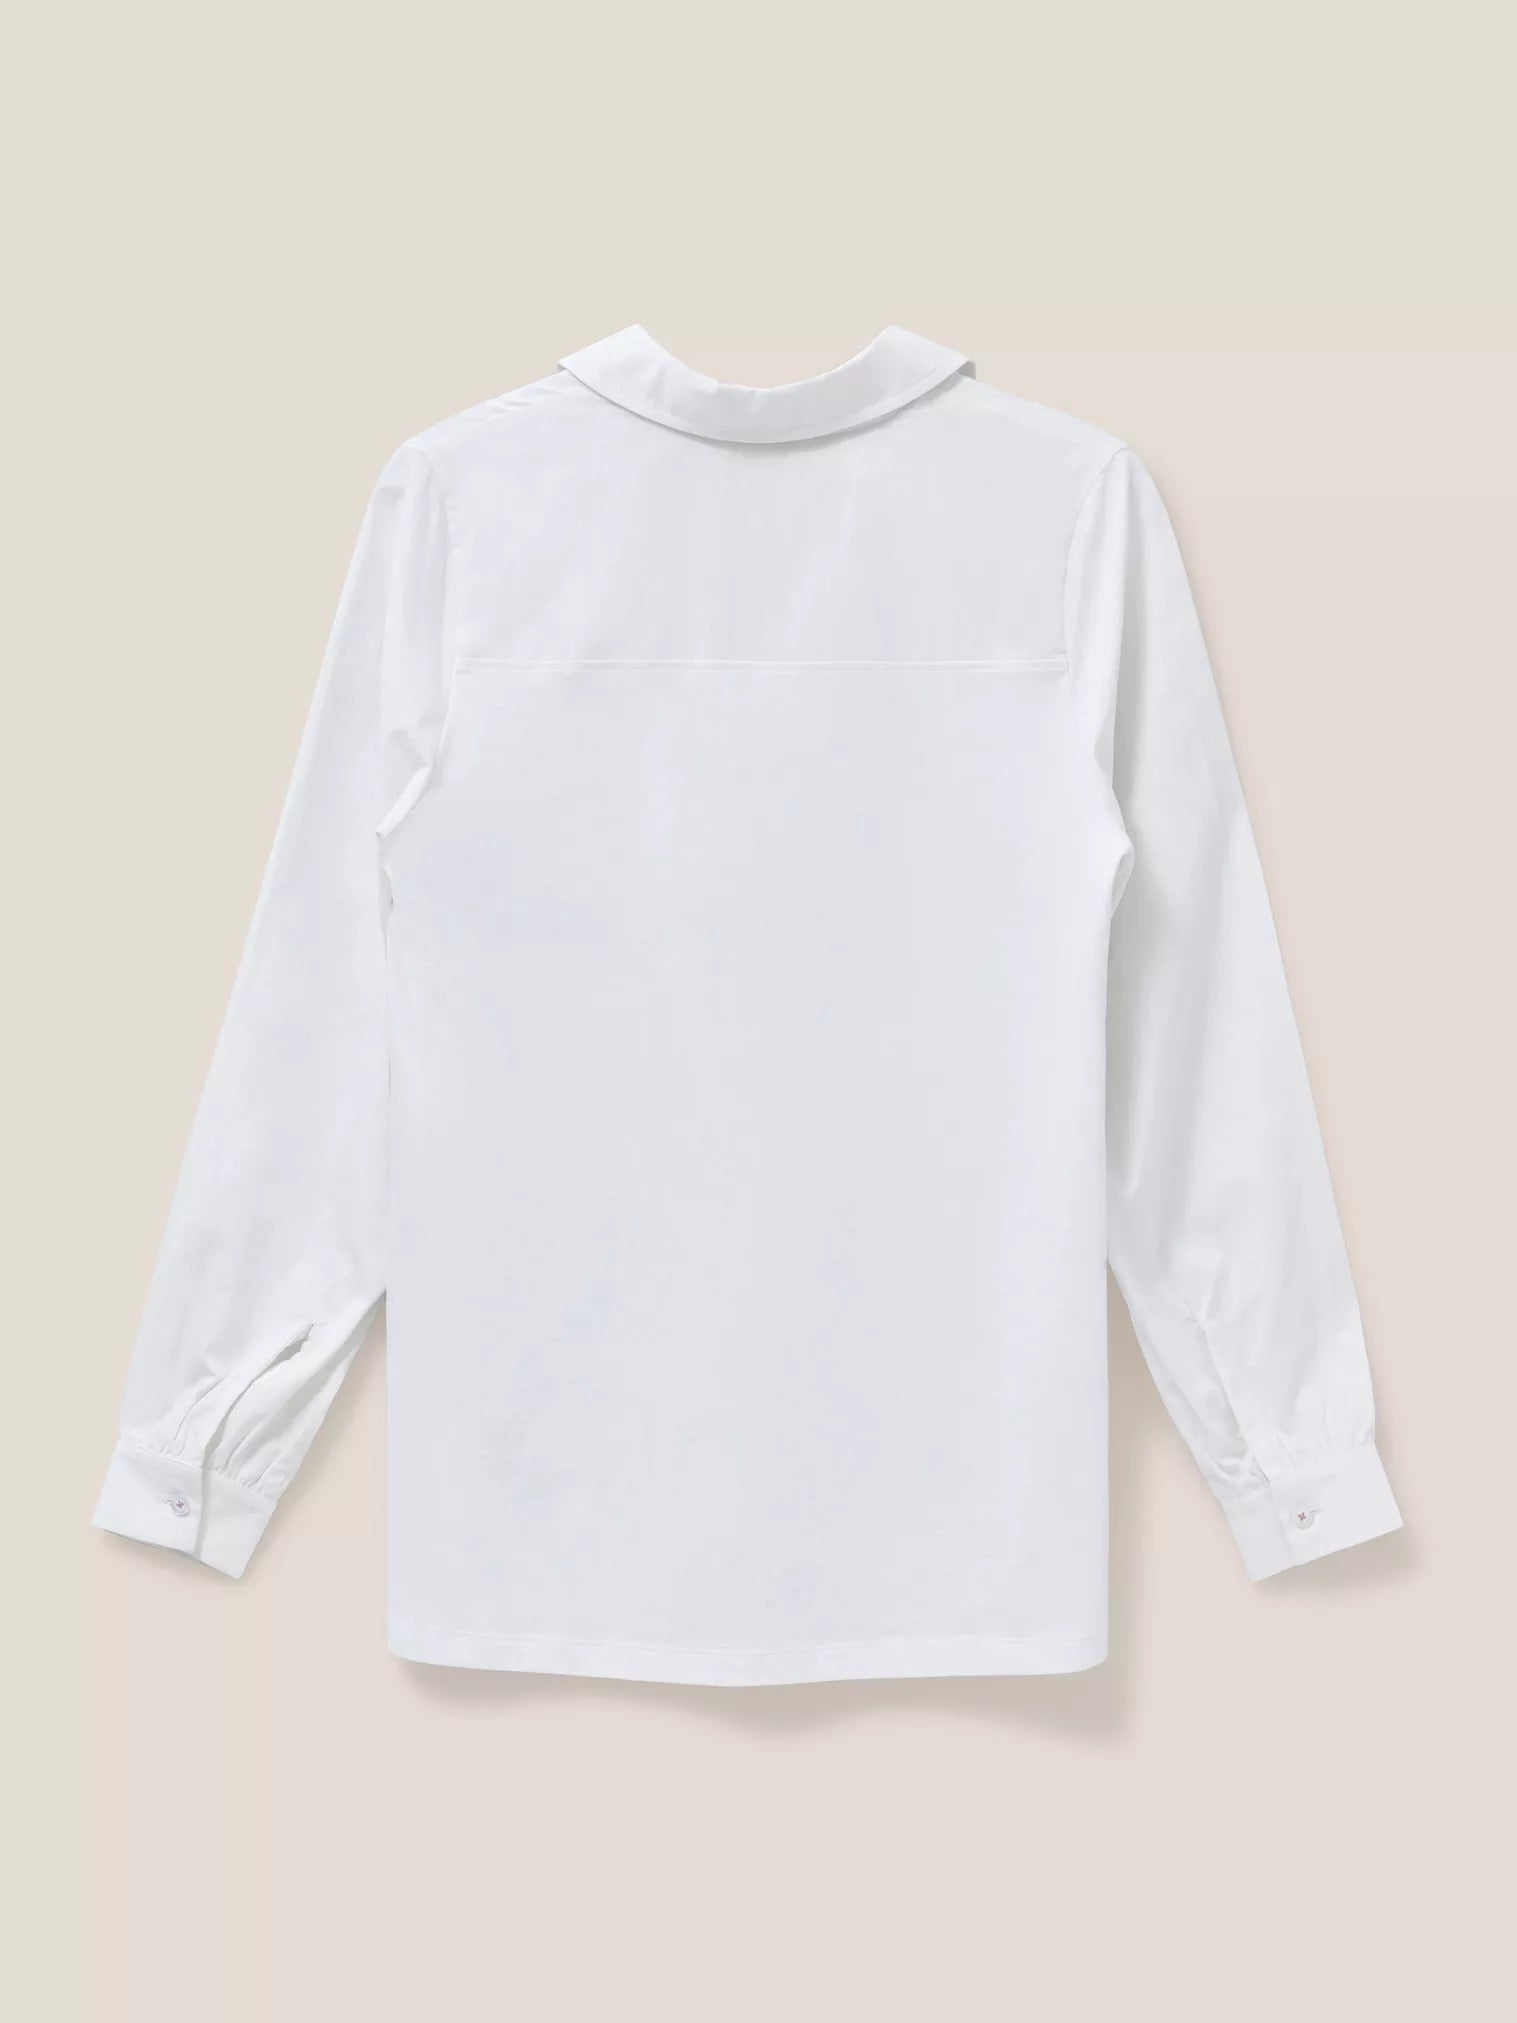 White Stuff Top Fran Shirt